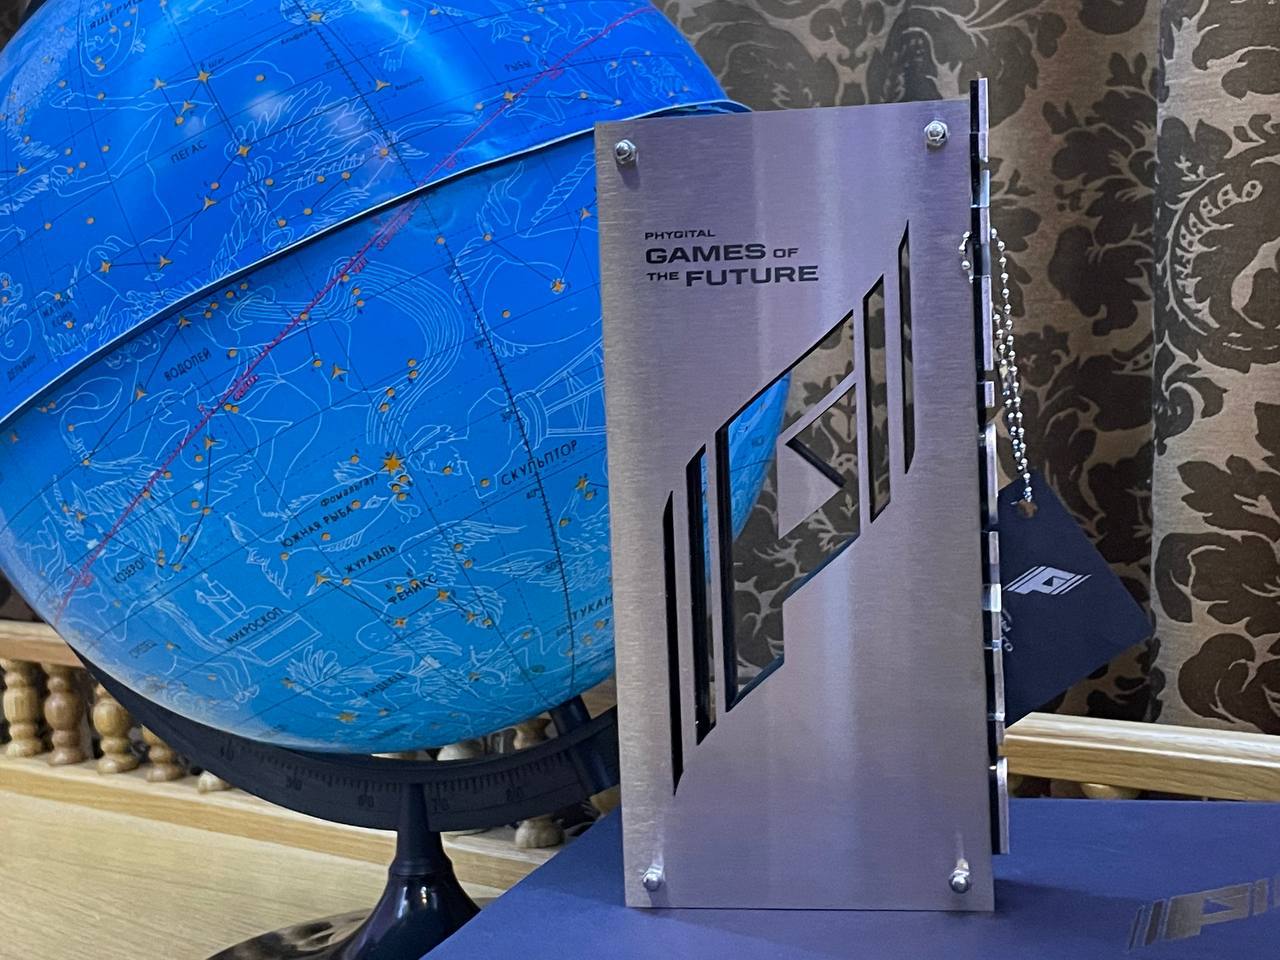 Копию трофея Игр будущего выставили в ульяновском планетарии